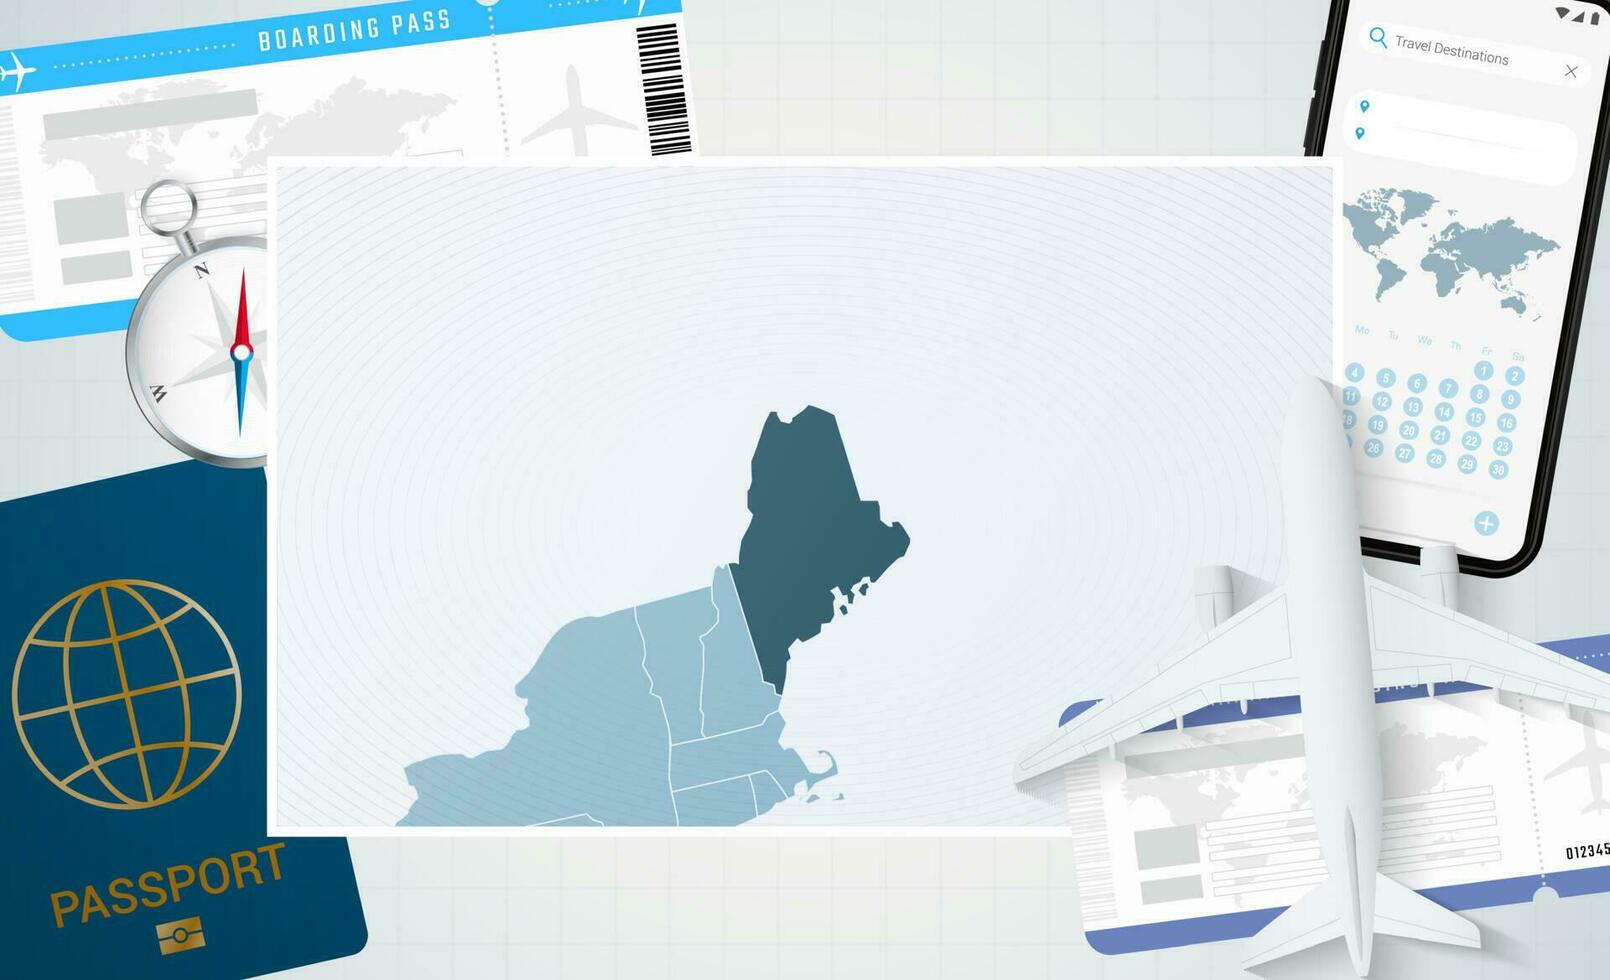 reis naar Maine, illustratie met een kaart van Maine. achtergrond met vliegtuig, cel telefoon, paspoort, kompas en kaartjes. vector